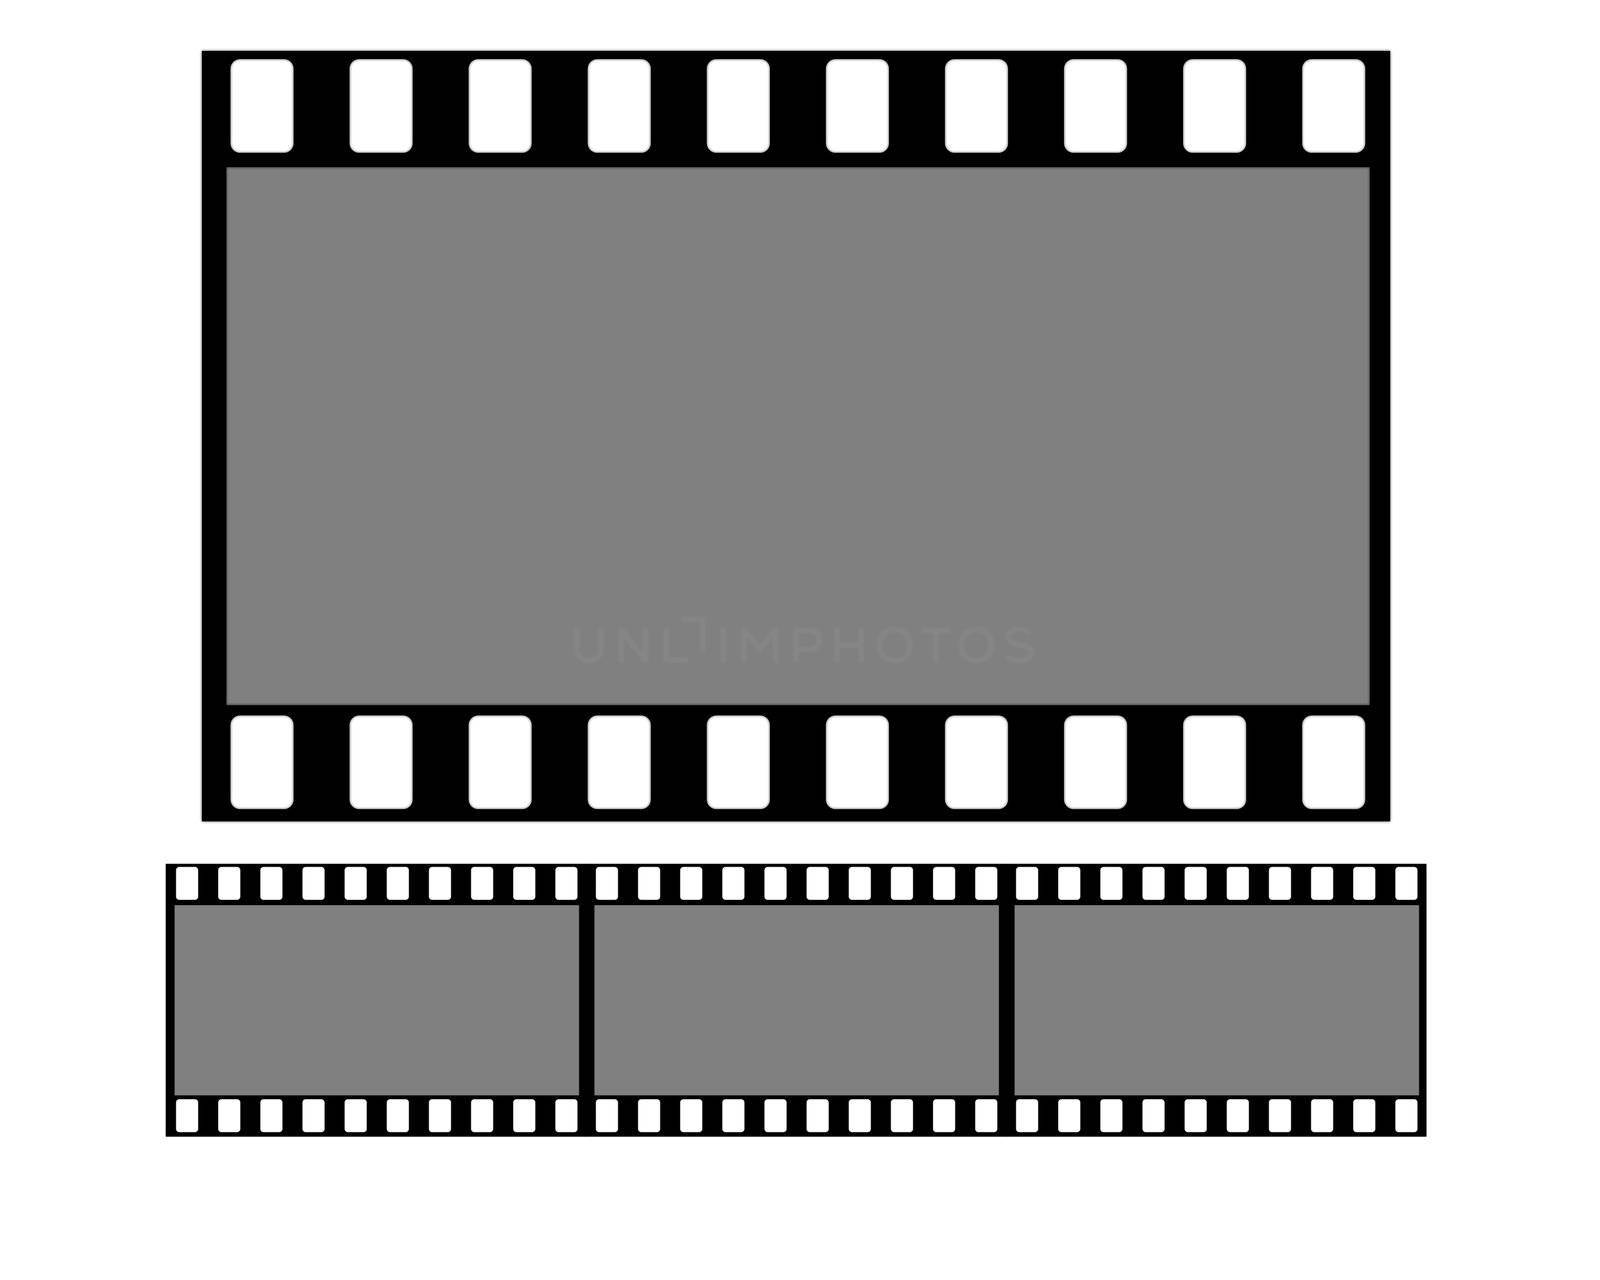  Film strip 1:1, 35mm digital high resolution
